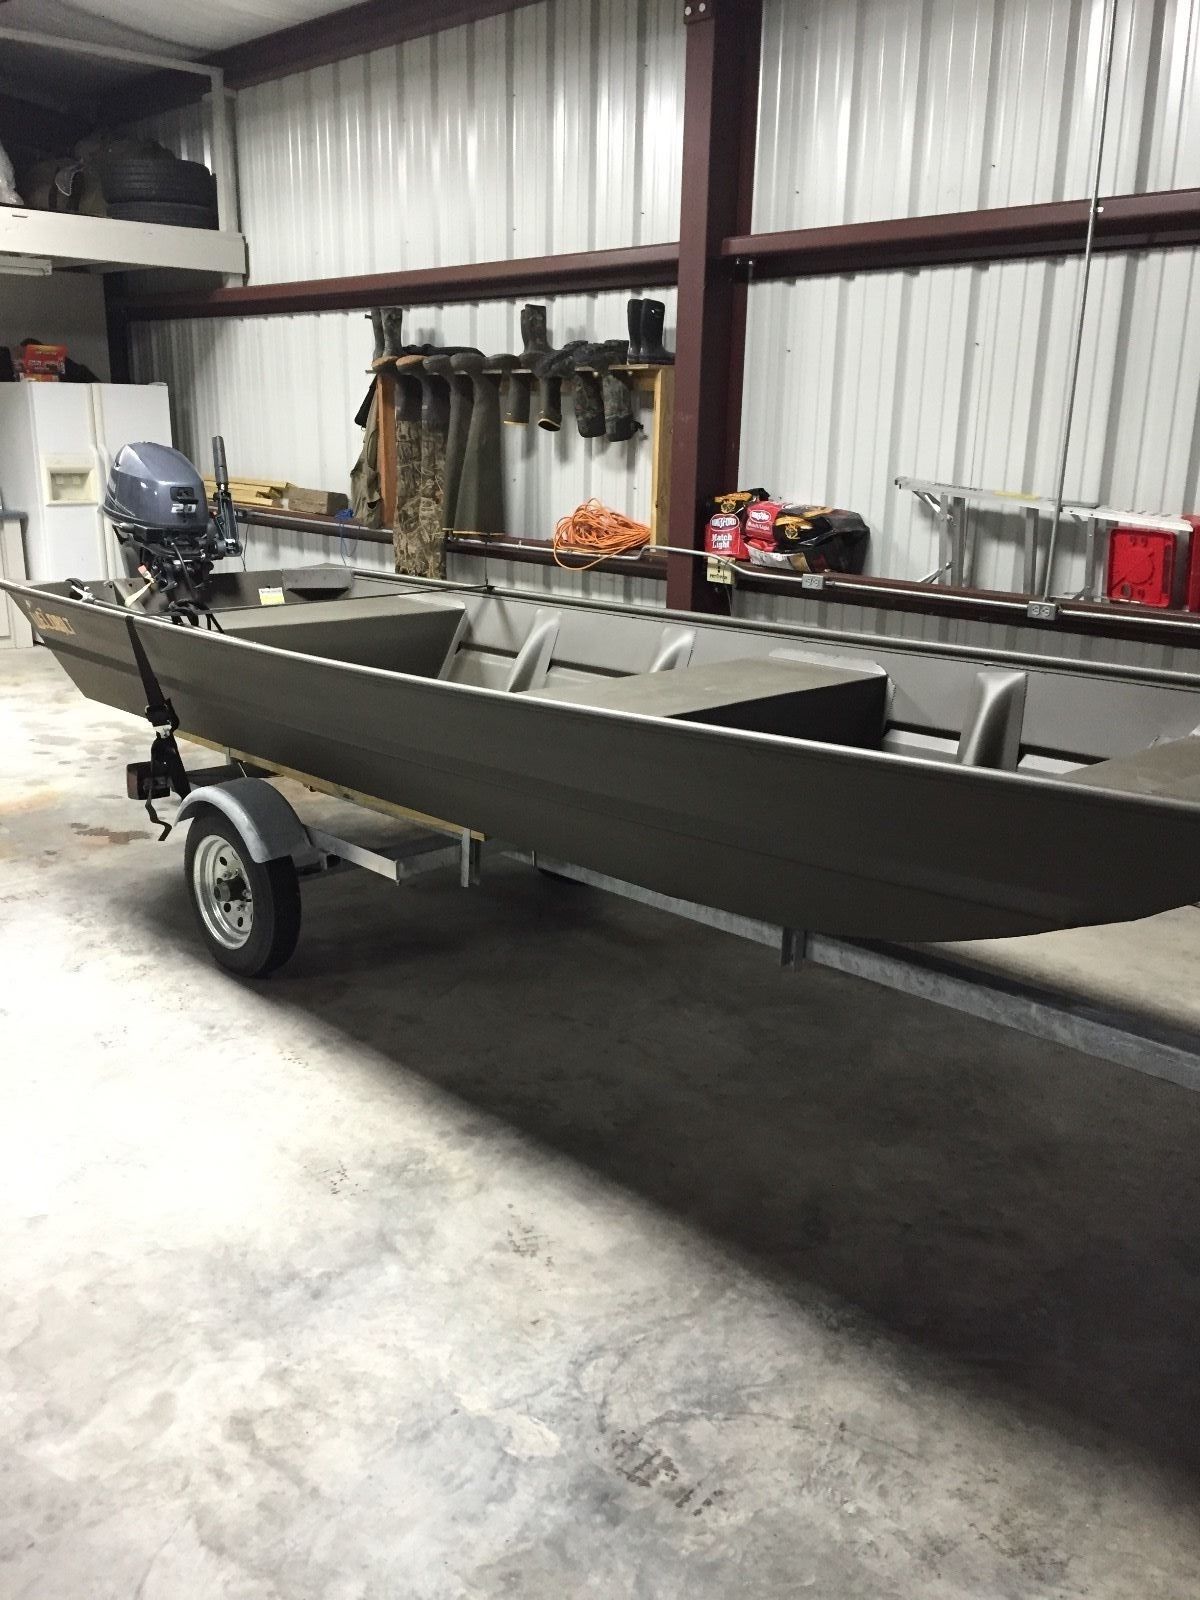 weldbilt jon boat 2015 for sale for $4,600 - boats-from